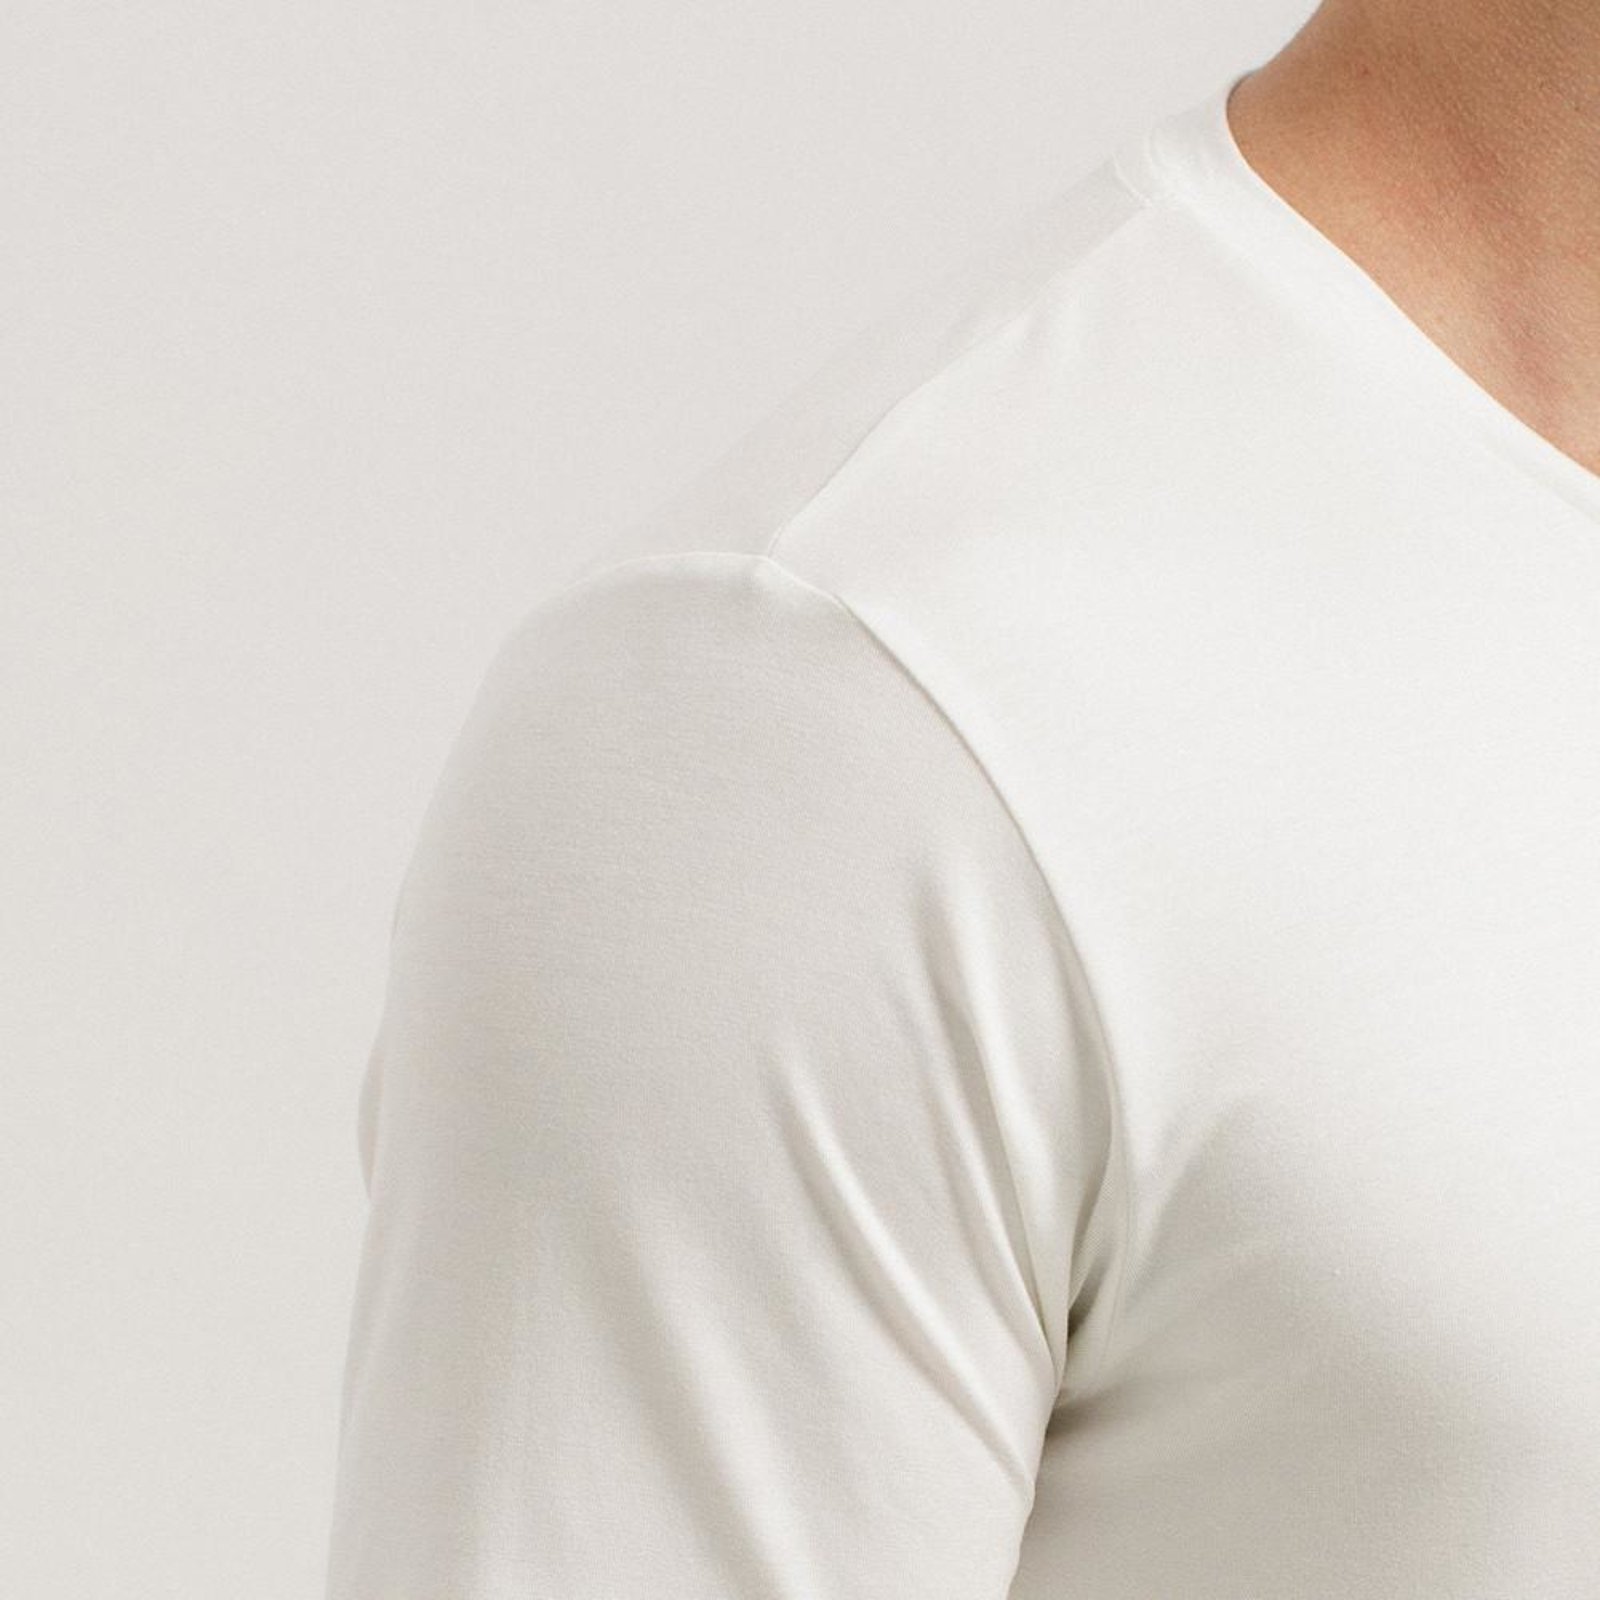 Tech T-Shirt gola V: a camiseta com gola V masculina da Insider